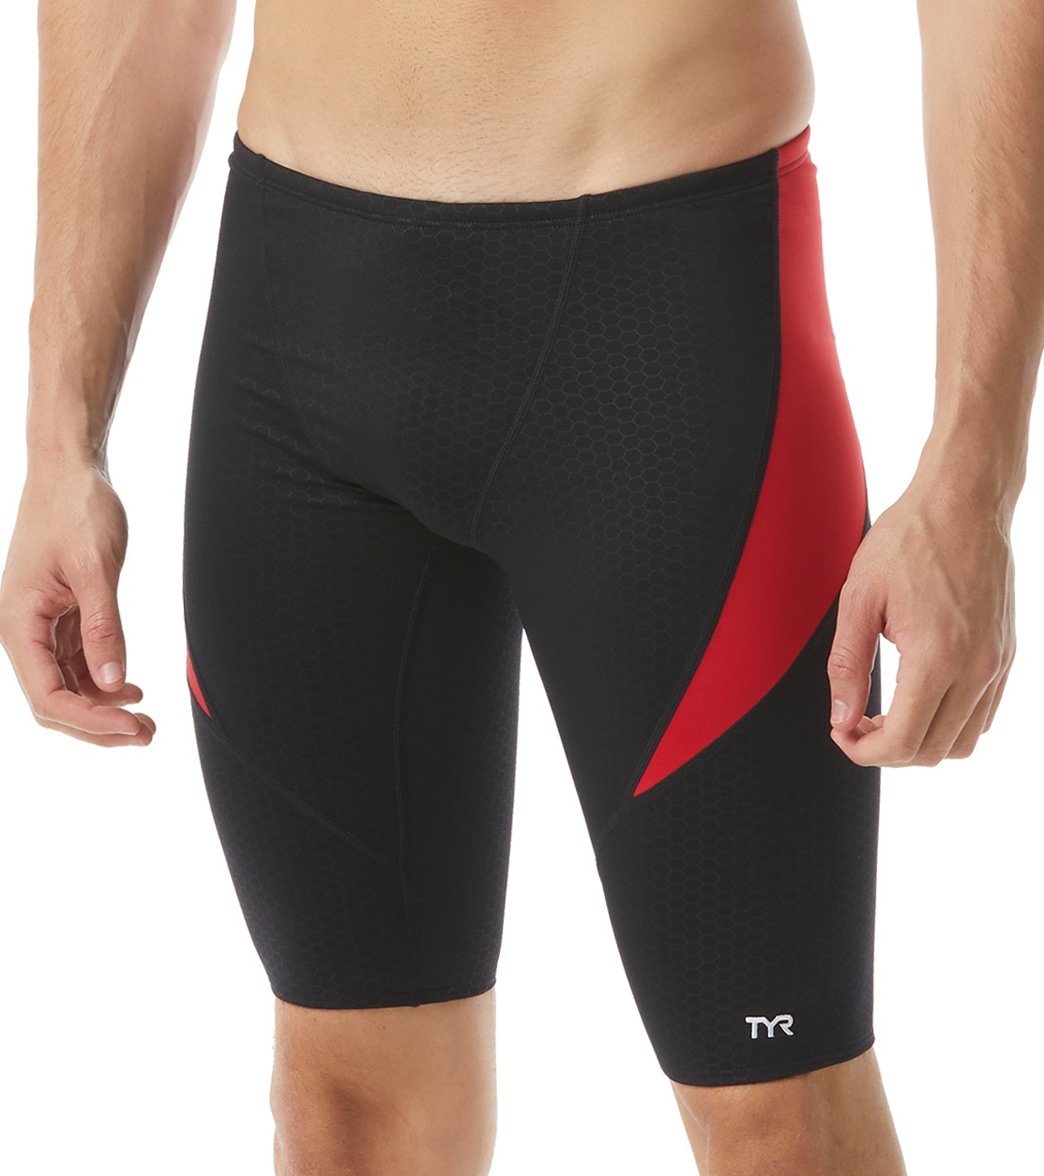 TYR Men's Hexa Curve Splice Jammer Swimsuit - Black/Red 26 - Swimoutlet.com